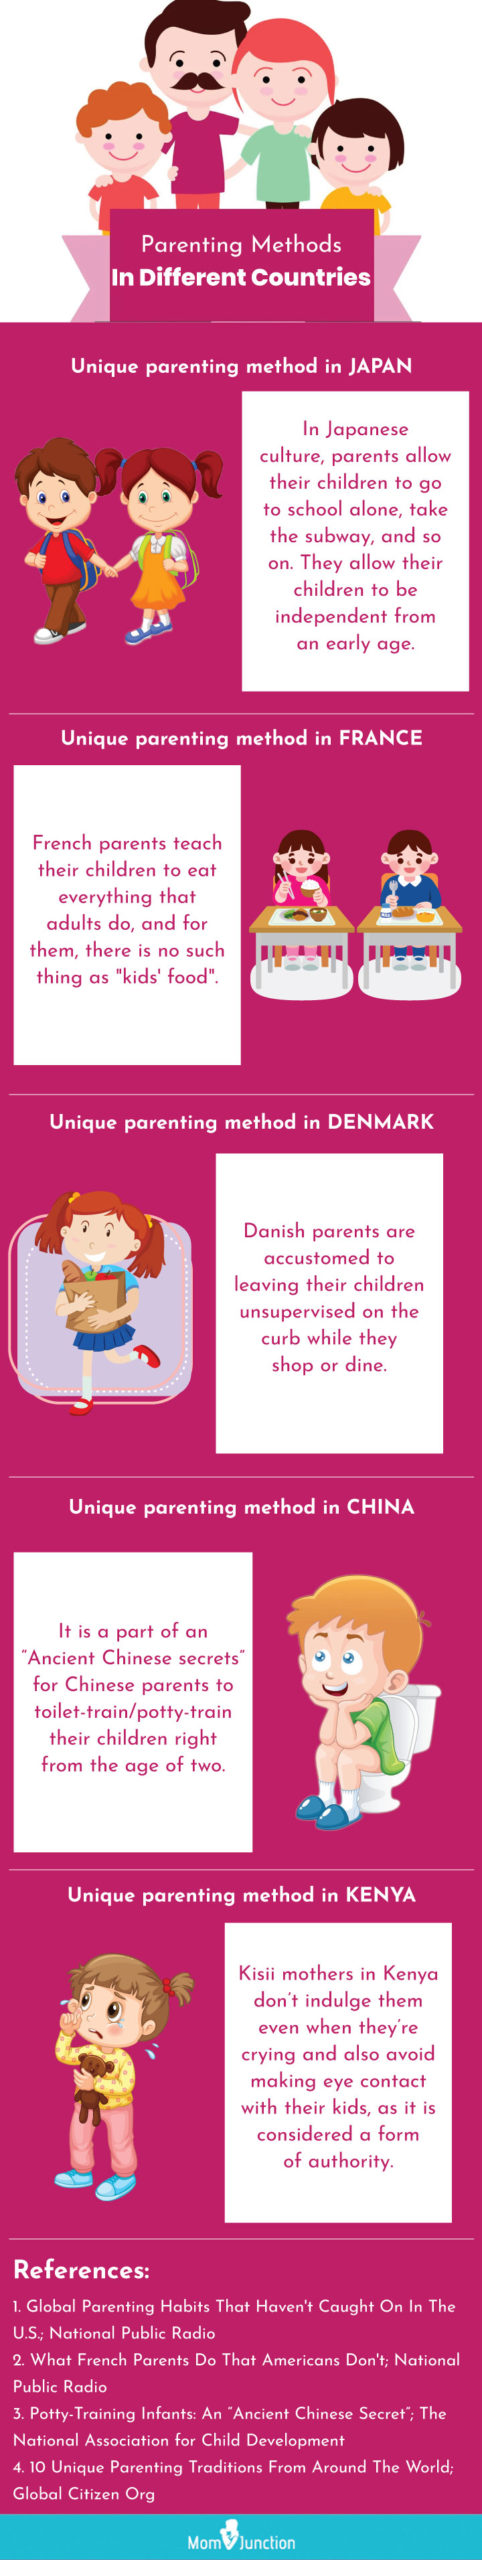 permissive parenting [infographic]